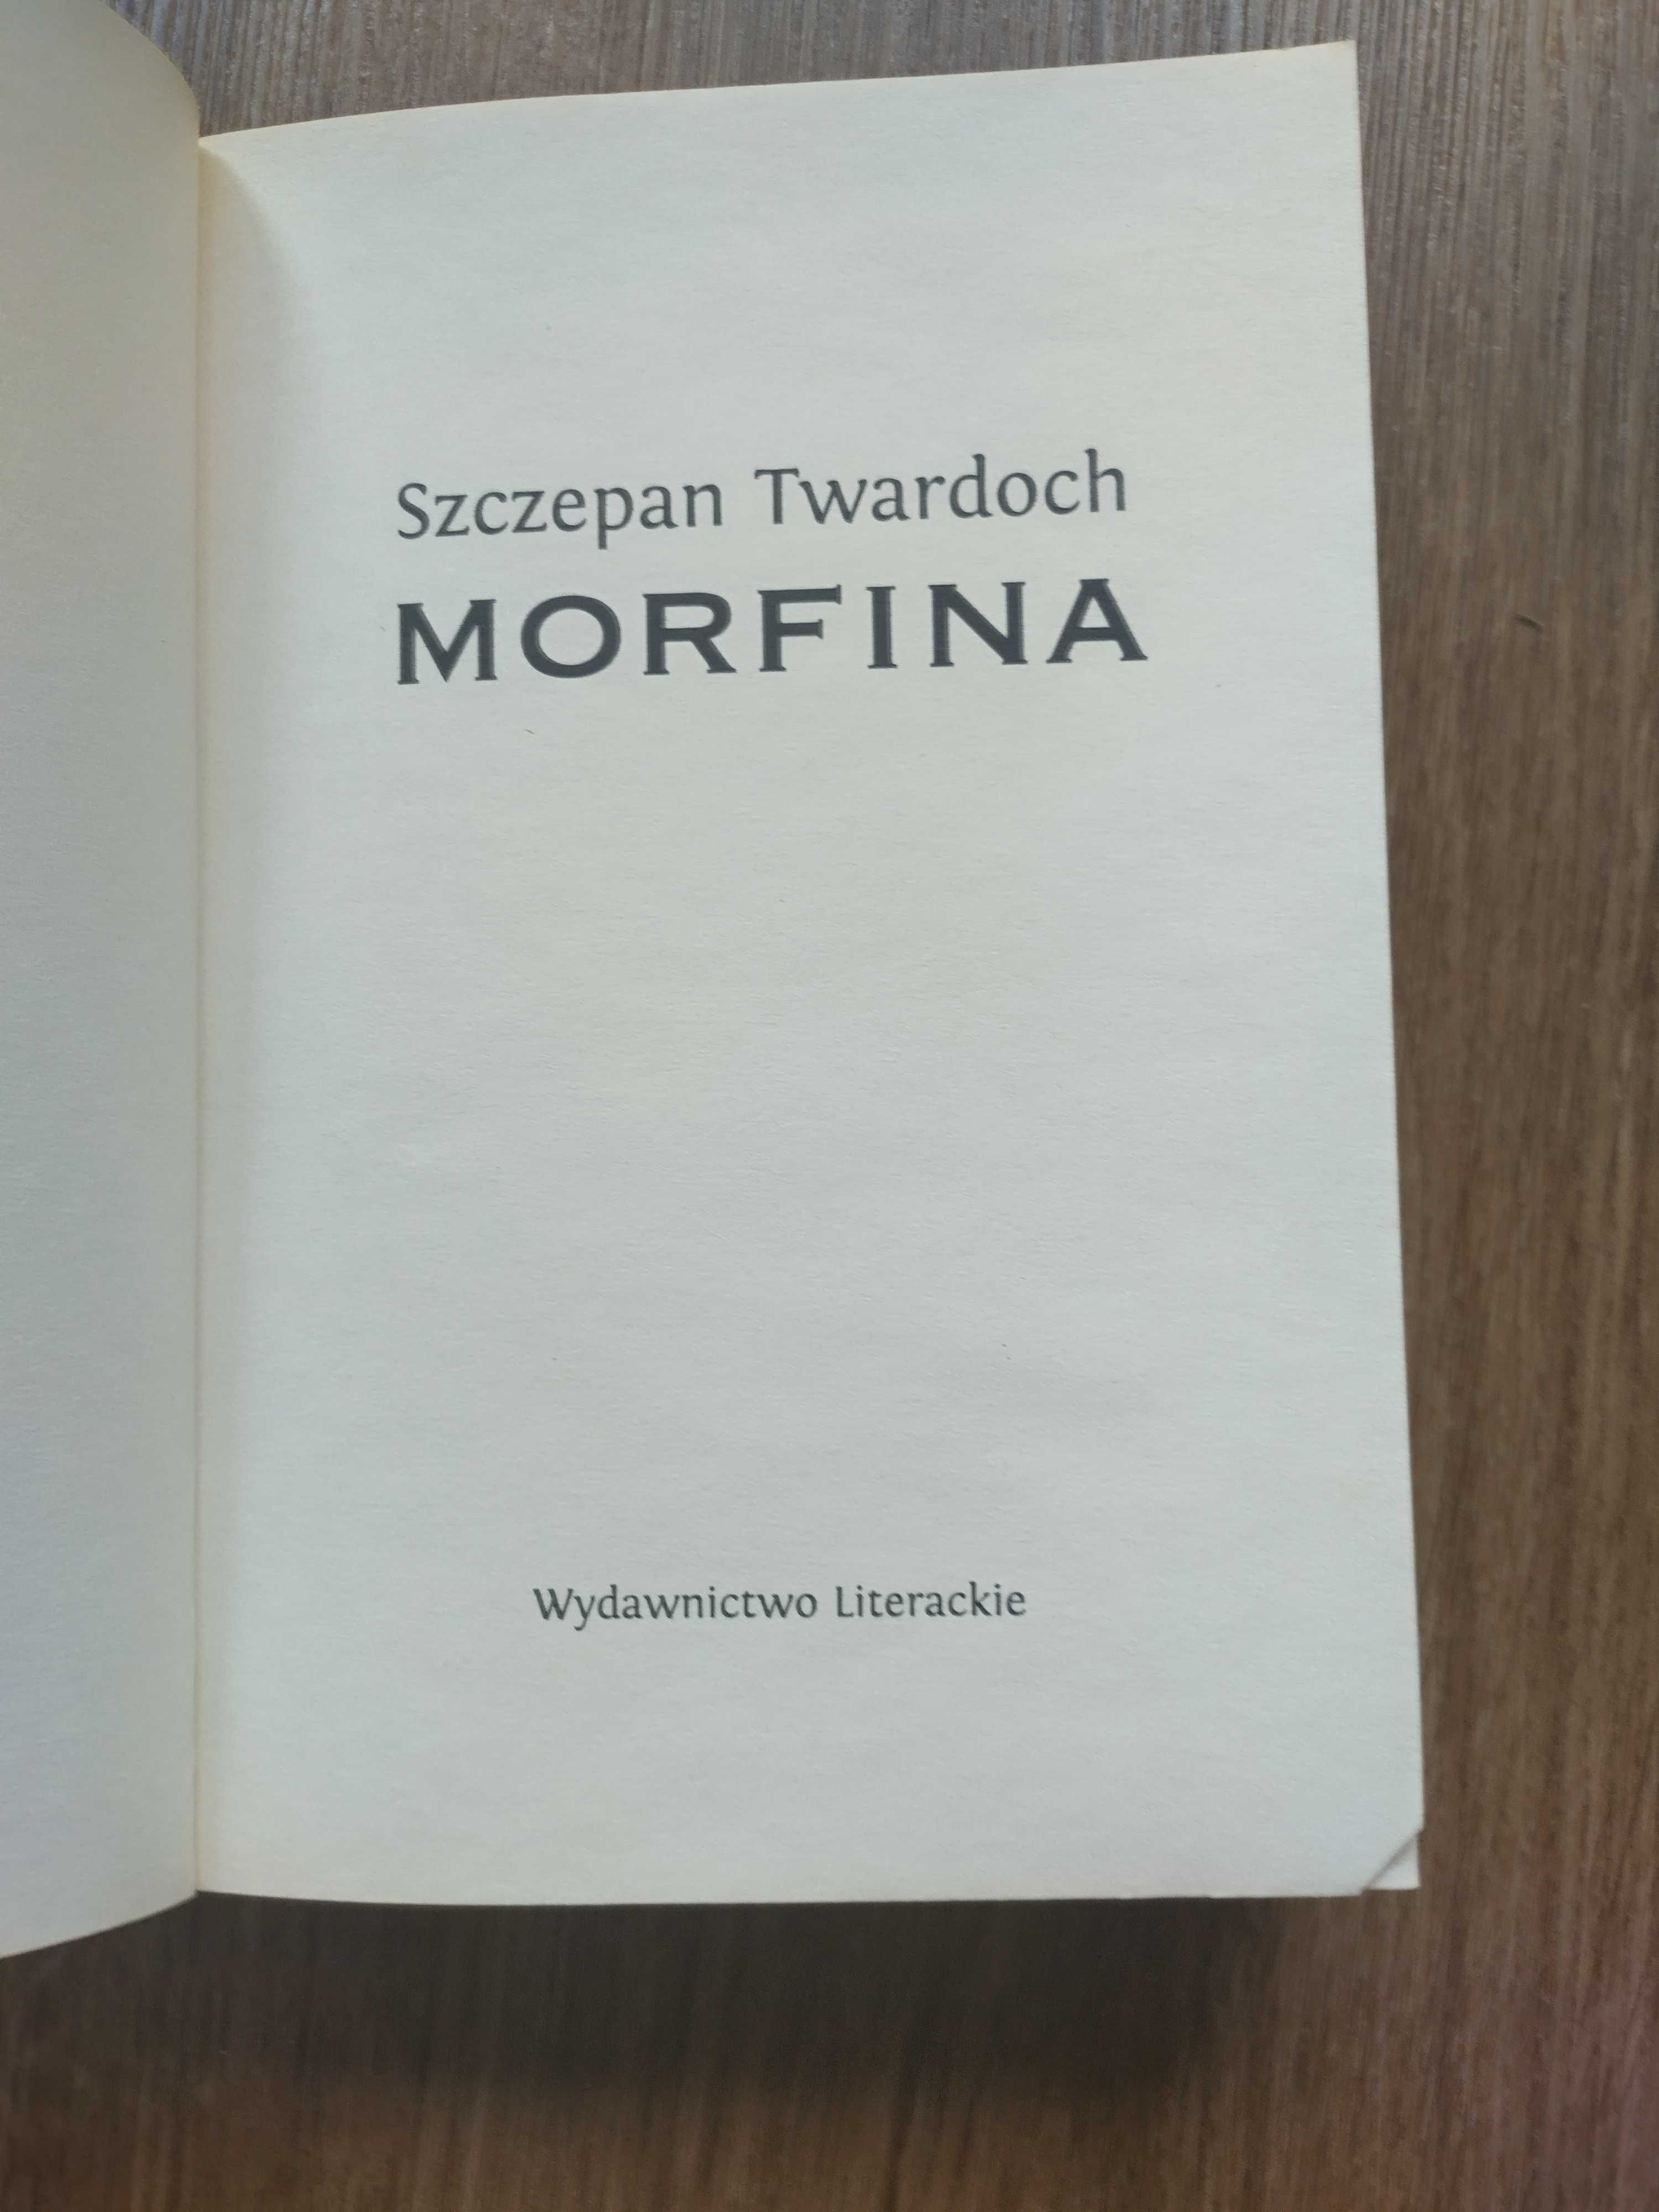 Morfina, książka Szczepana Twardocha